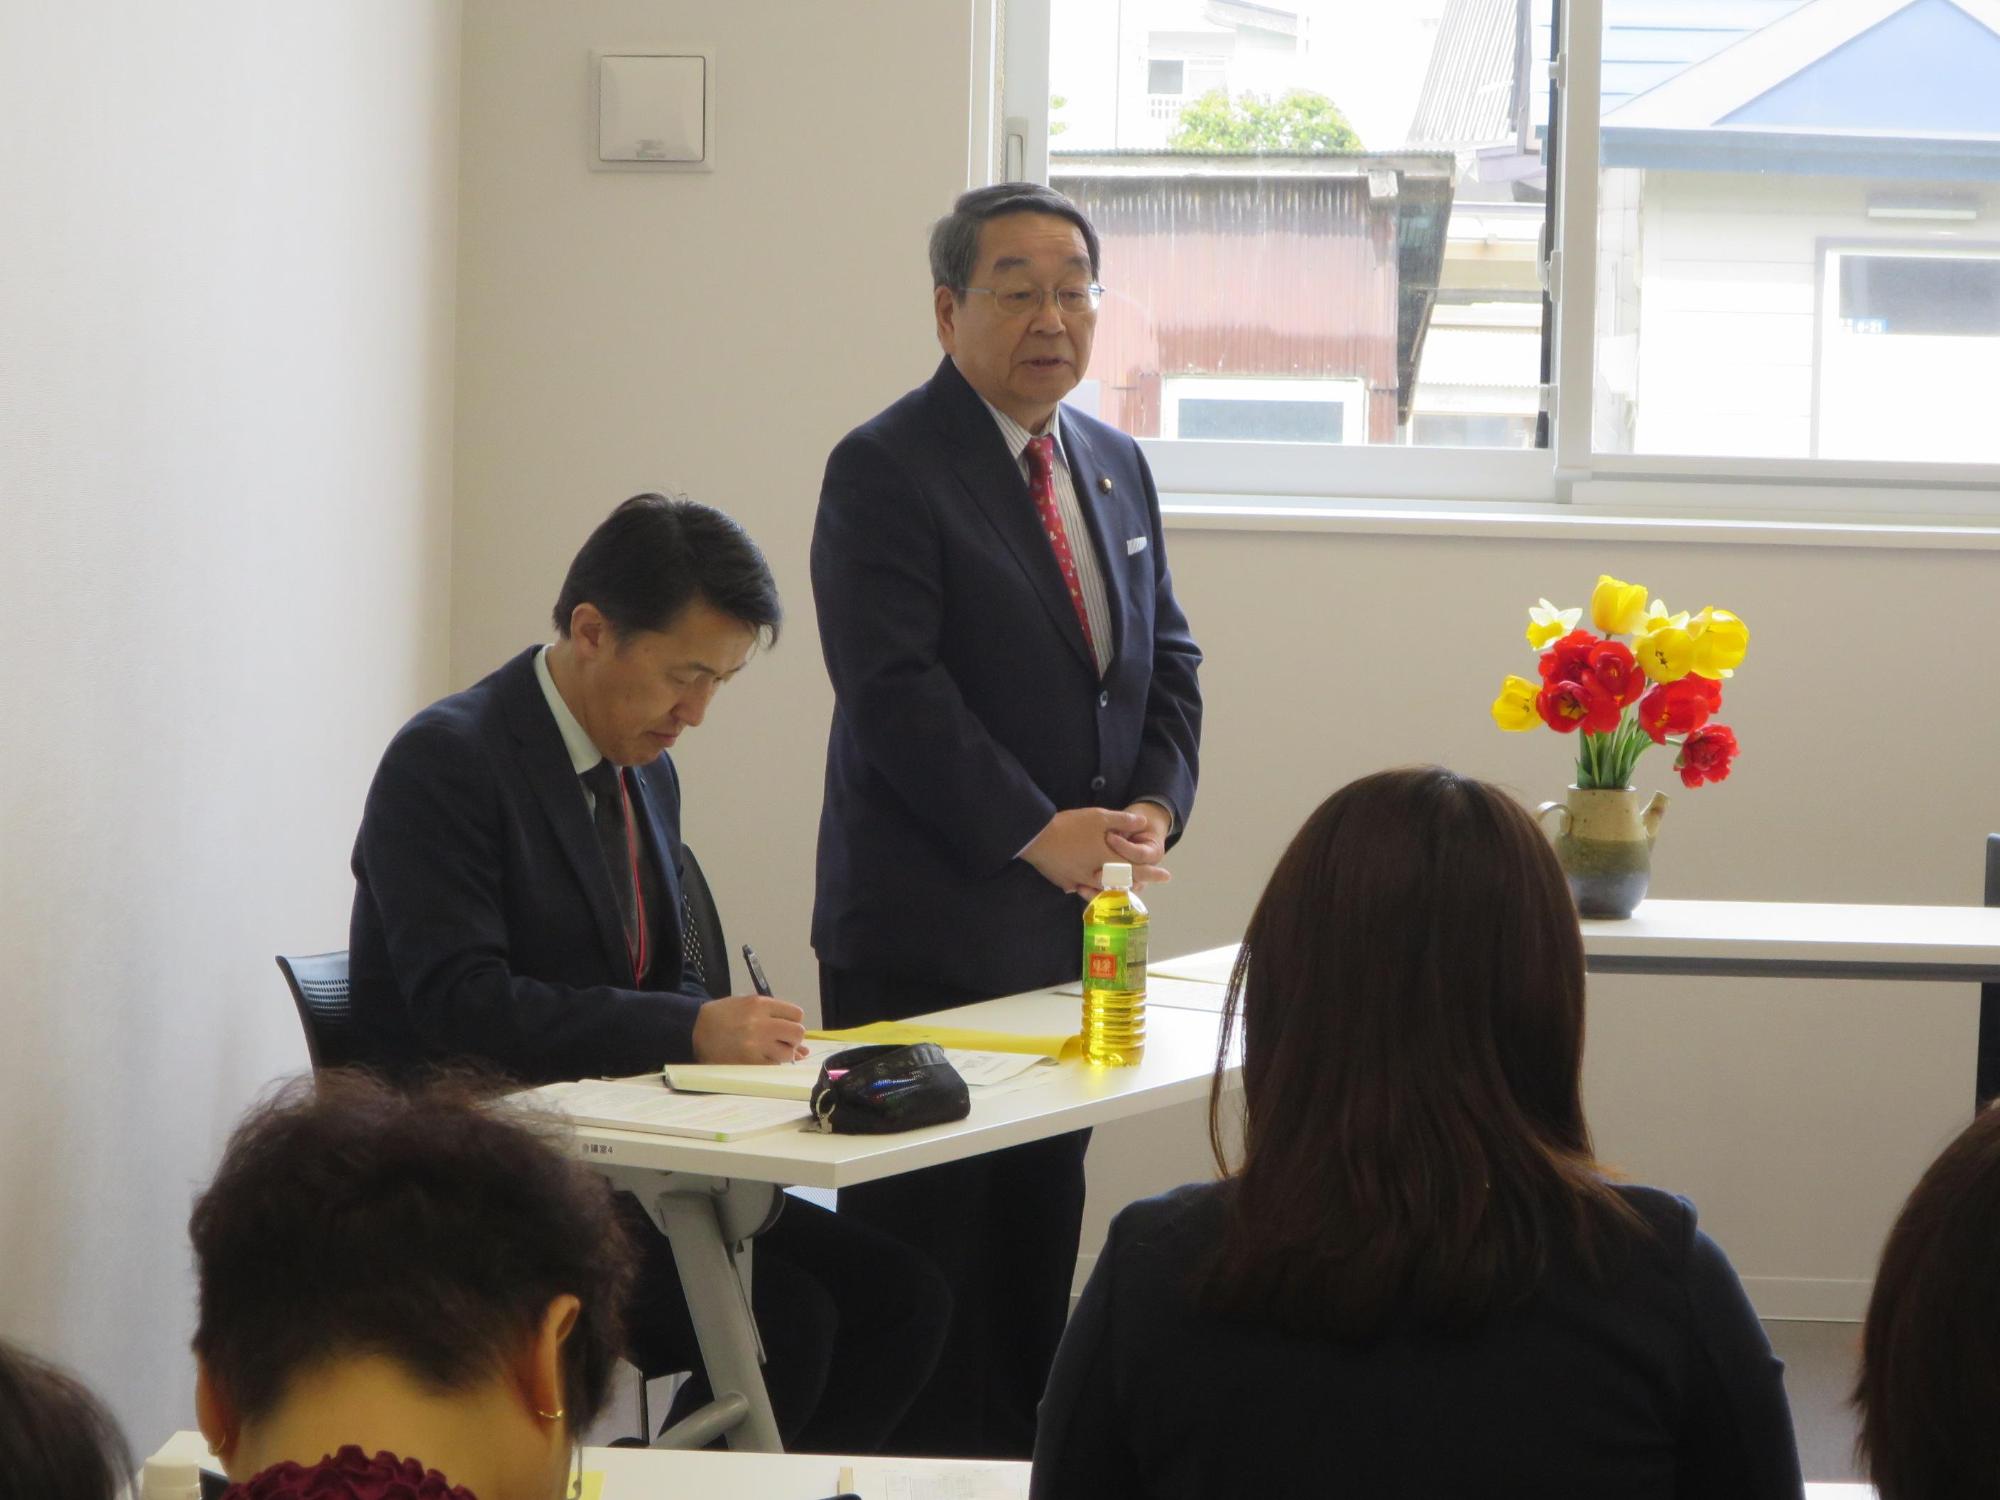 「女性ネットワークえにわ総会」にて挨拶をしている原田市長の写真